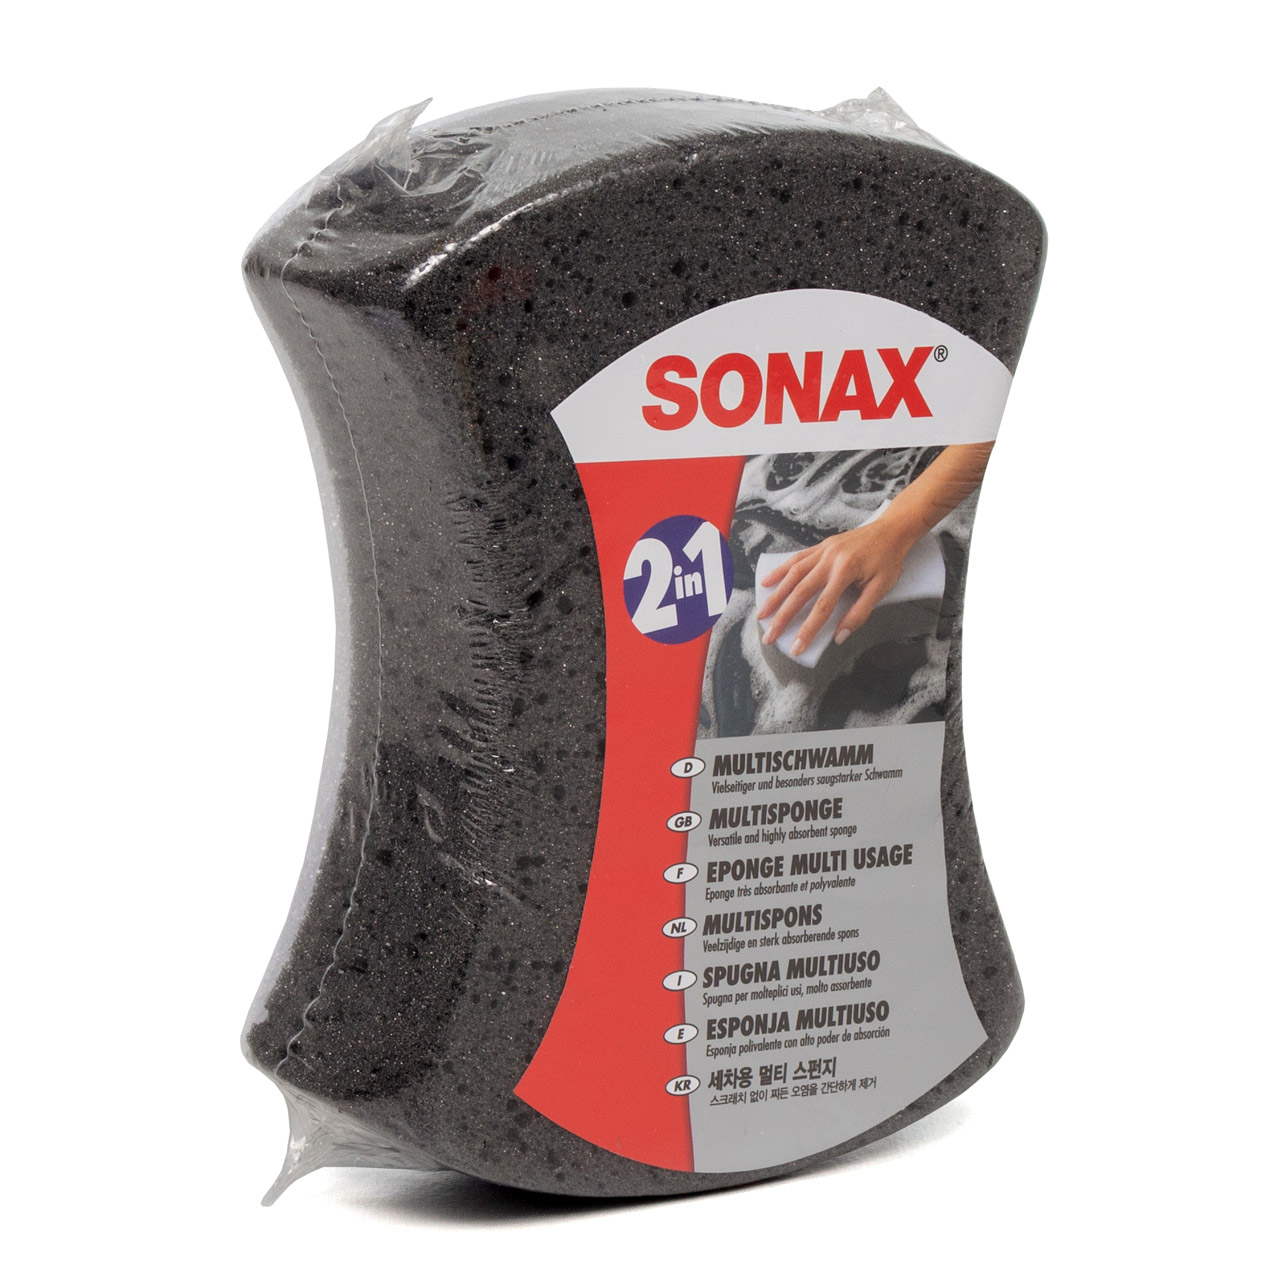 SONAX Autoshampoo Wasch&Wax + Insektenentferner + Insektenschwamm + Multischwamm